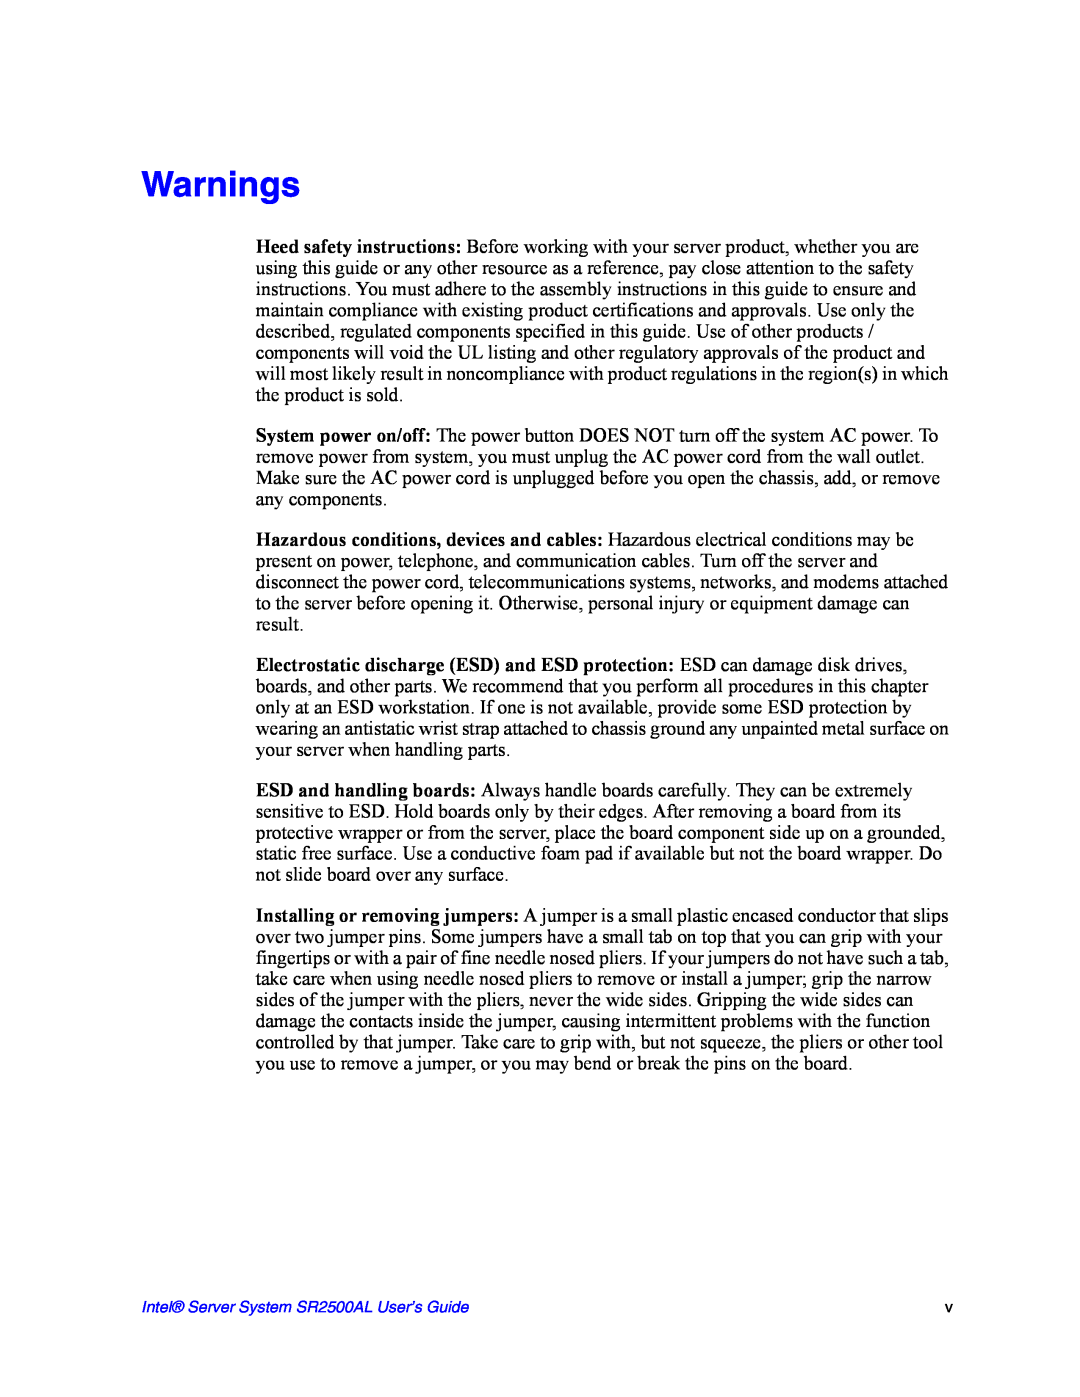 Intel manual Warnings, Intel Server System SR2500AL User’s Guide 